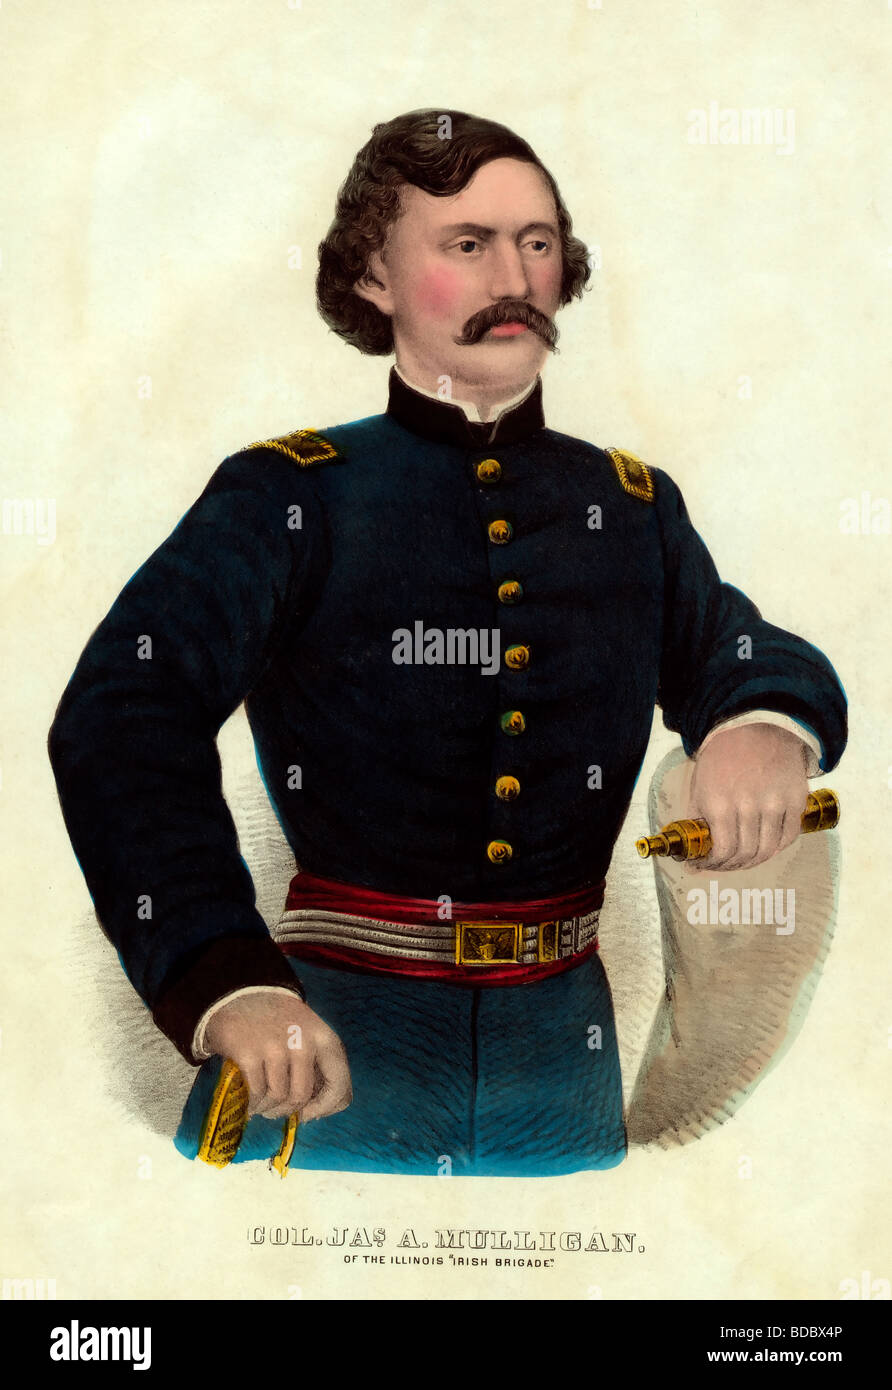 Colonel James A. Mulligan von Illinois "Irische Brigade", getötet in Aktion am Juli 24,1864 in den USA Bürgerkrieg Stockfoto